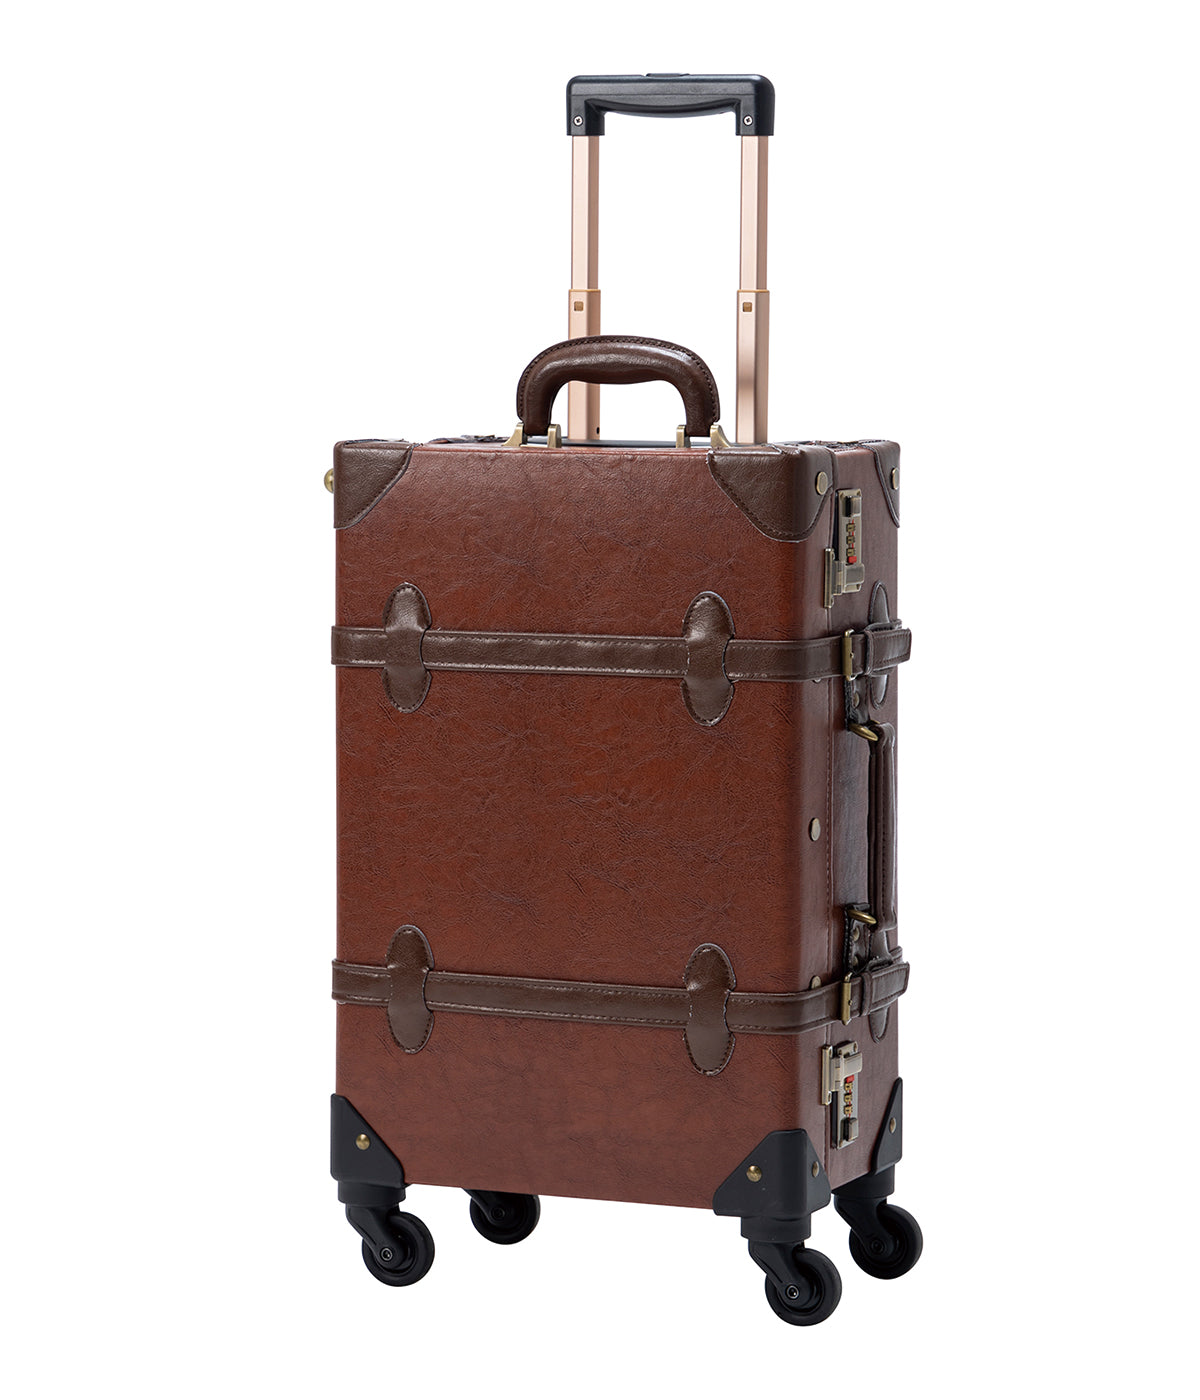 SarahFace Spinner Suitcase - Caramel Brown's